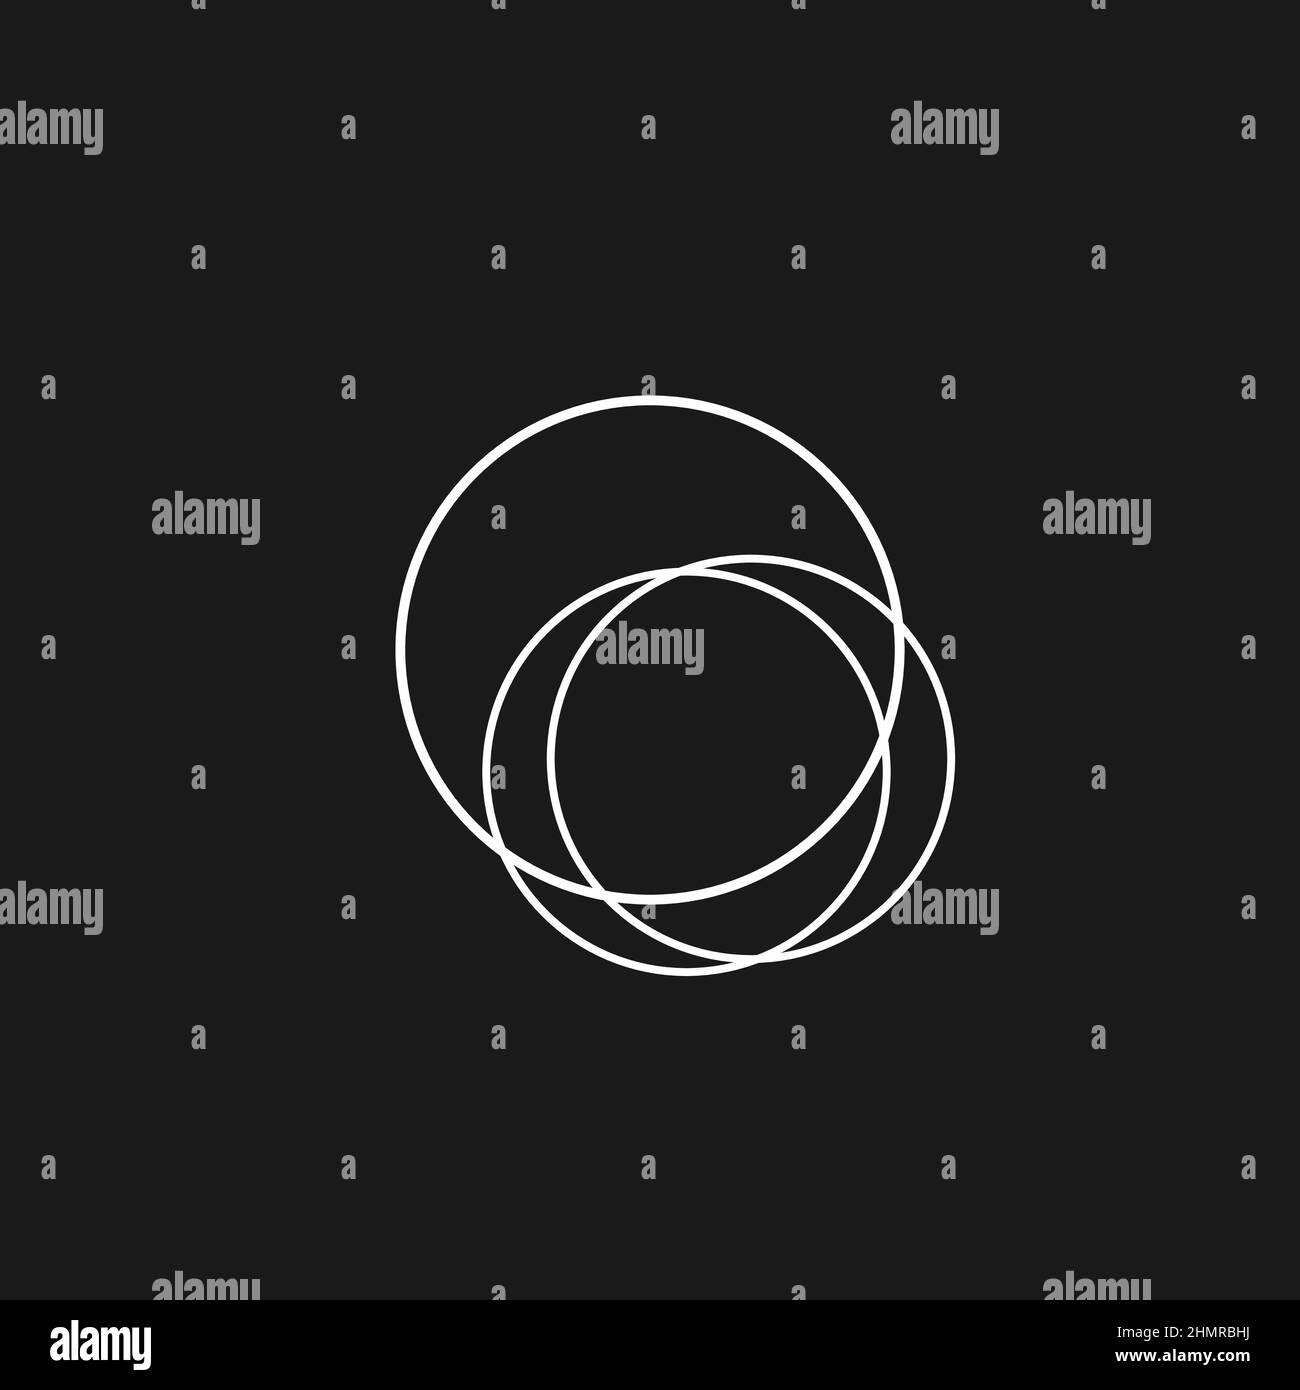 L'esthétique de Retawave décrit la composition des cercles qui se croisent. Composition en noir et blanc de cercles de style 1980s de Synthwave. Four à micro-ondes Illustration de Vecteur